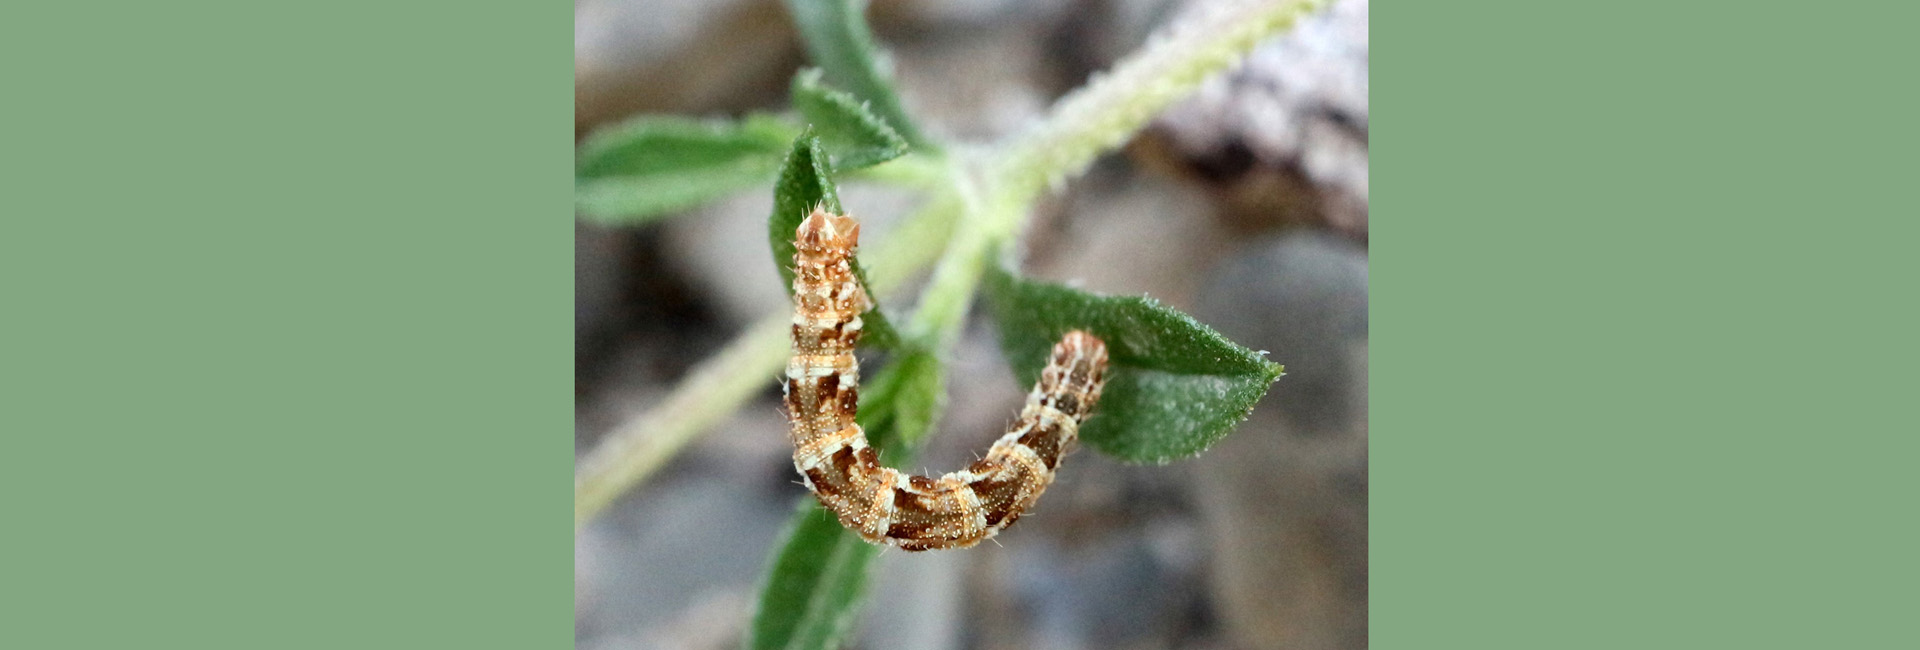 Eupithecia dodoneata larva, Crete - photo © Zacharias Angourakis